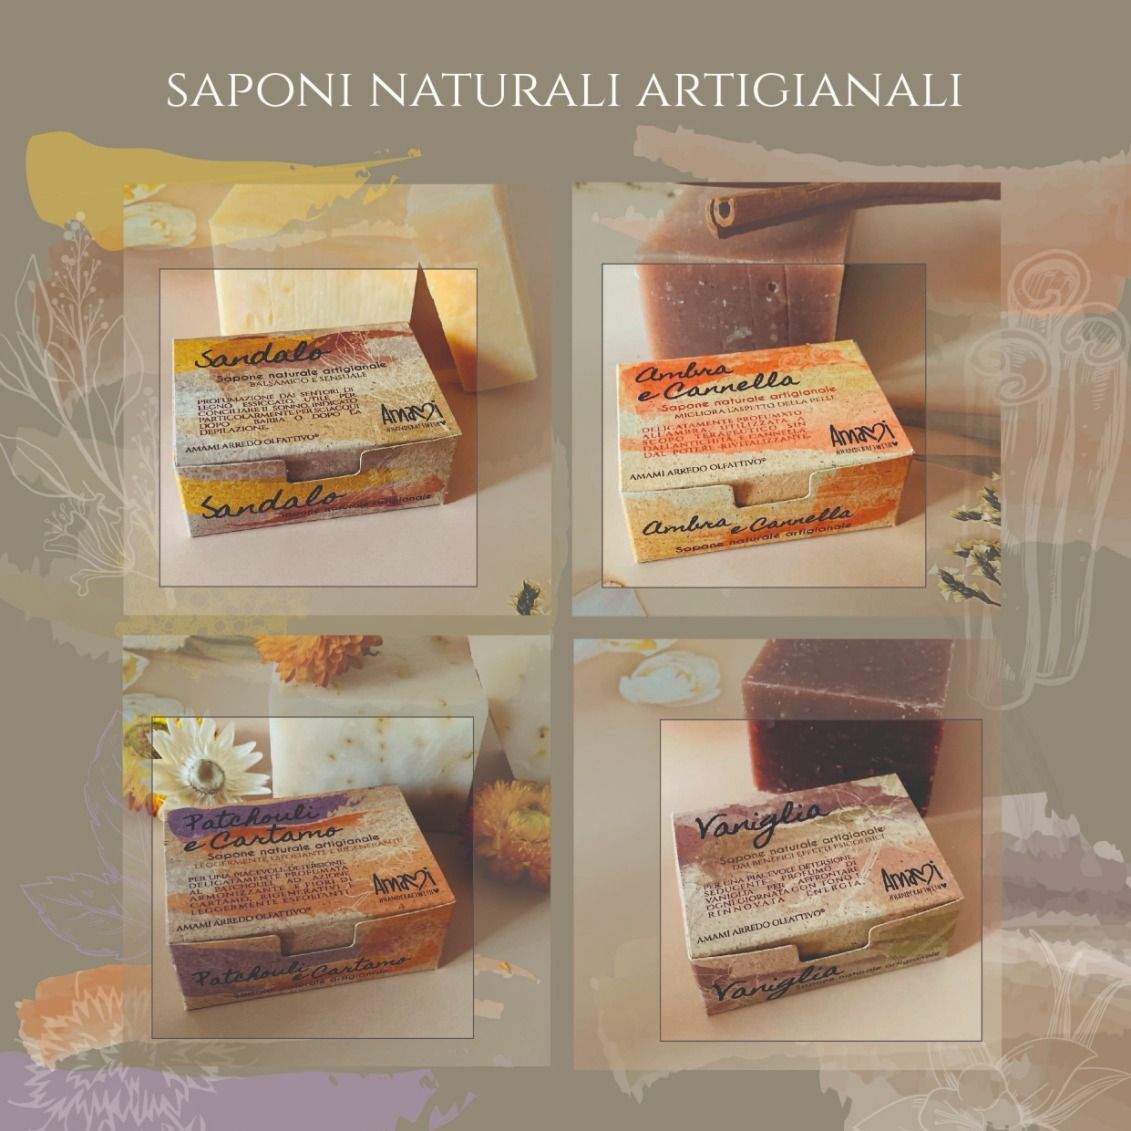 Box 4 Saponi Naturali.